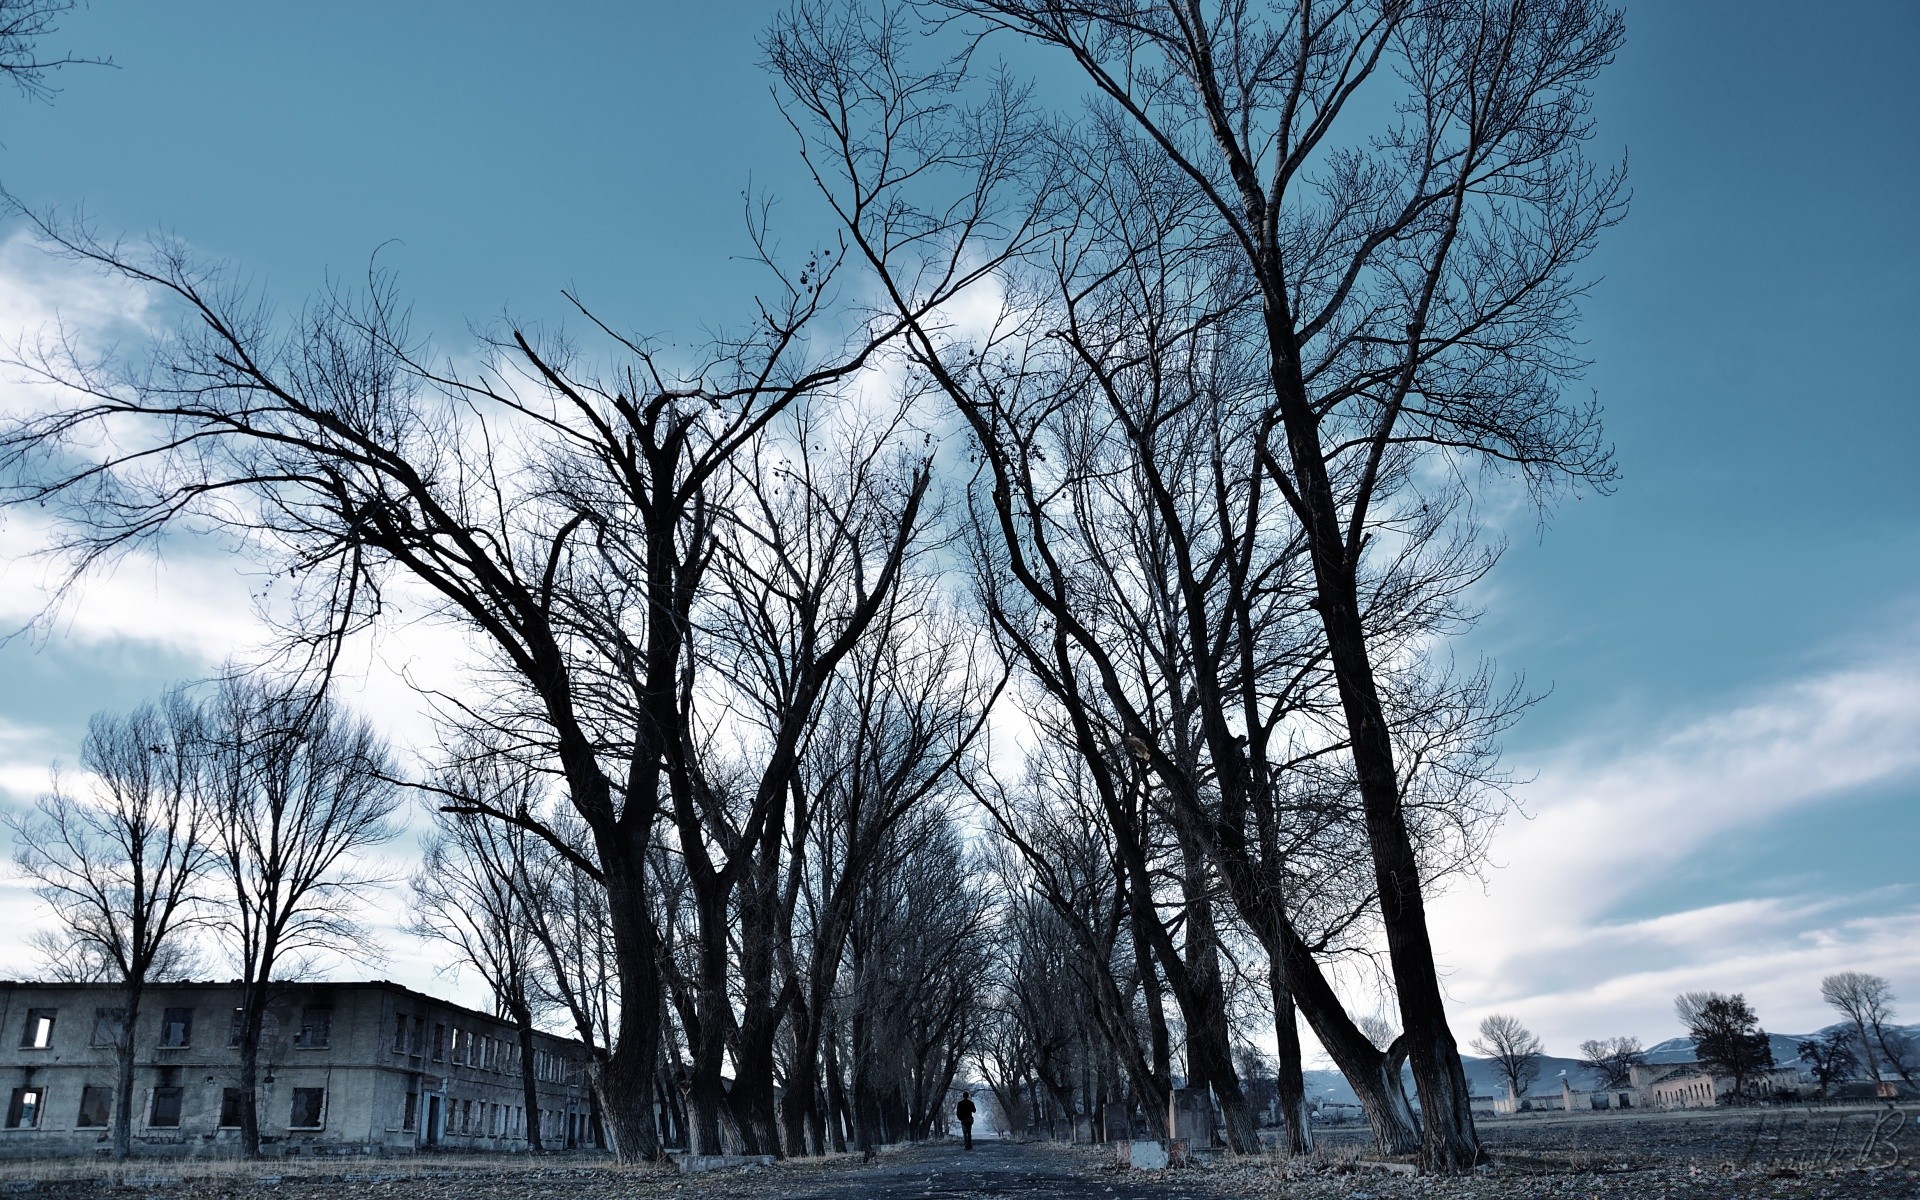 пейзажи дерево зима природа древесины пейзаж на открытом воздухе снег погода рассвет мороз туман парк филиал сезон холодная осень